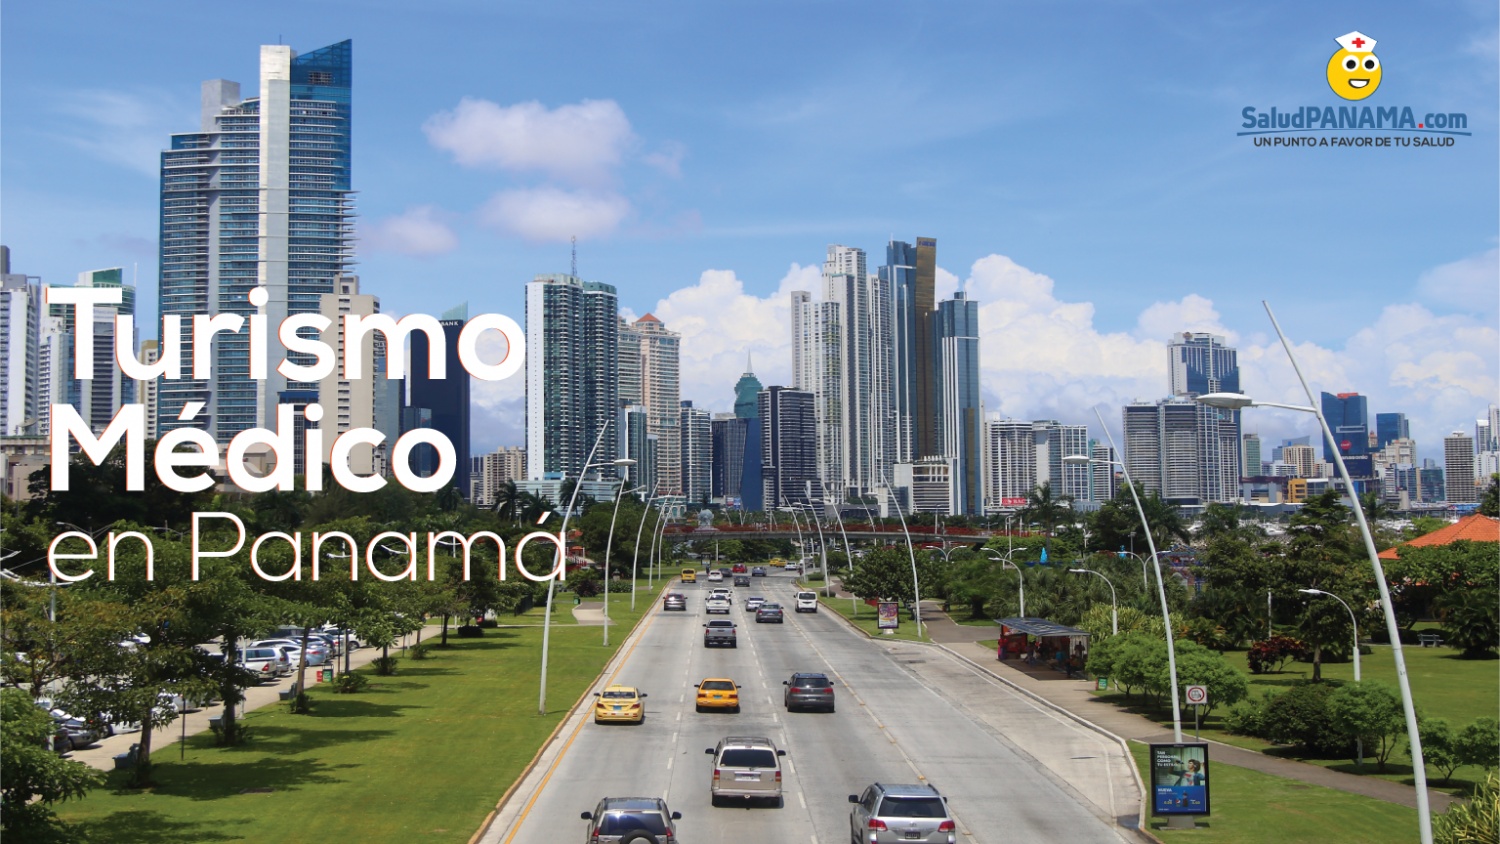 Turismo Médico en Panamá